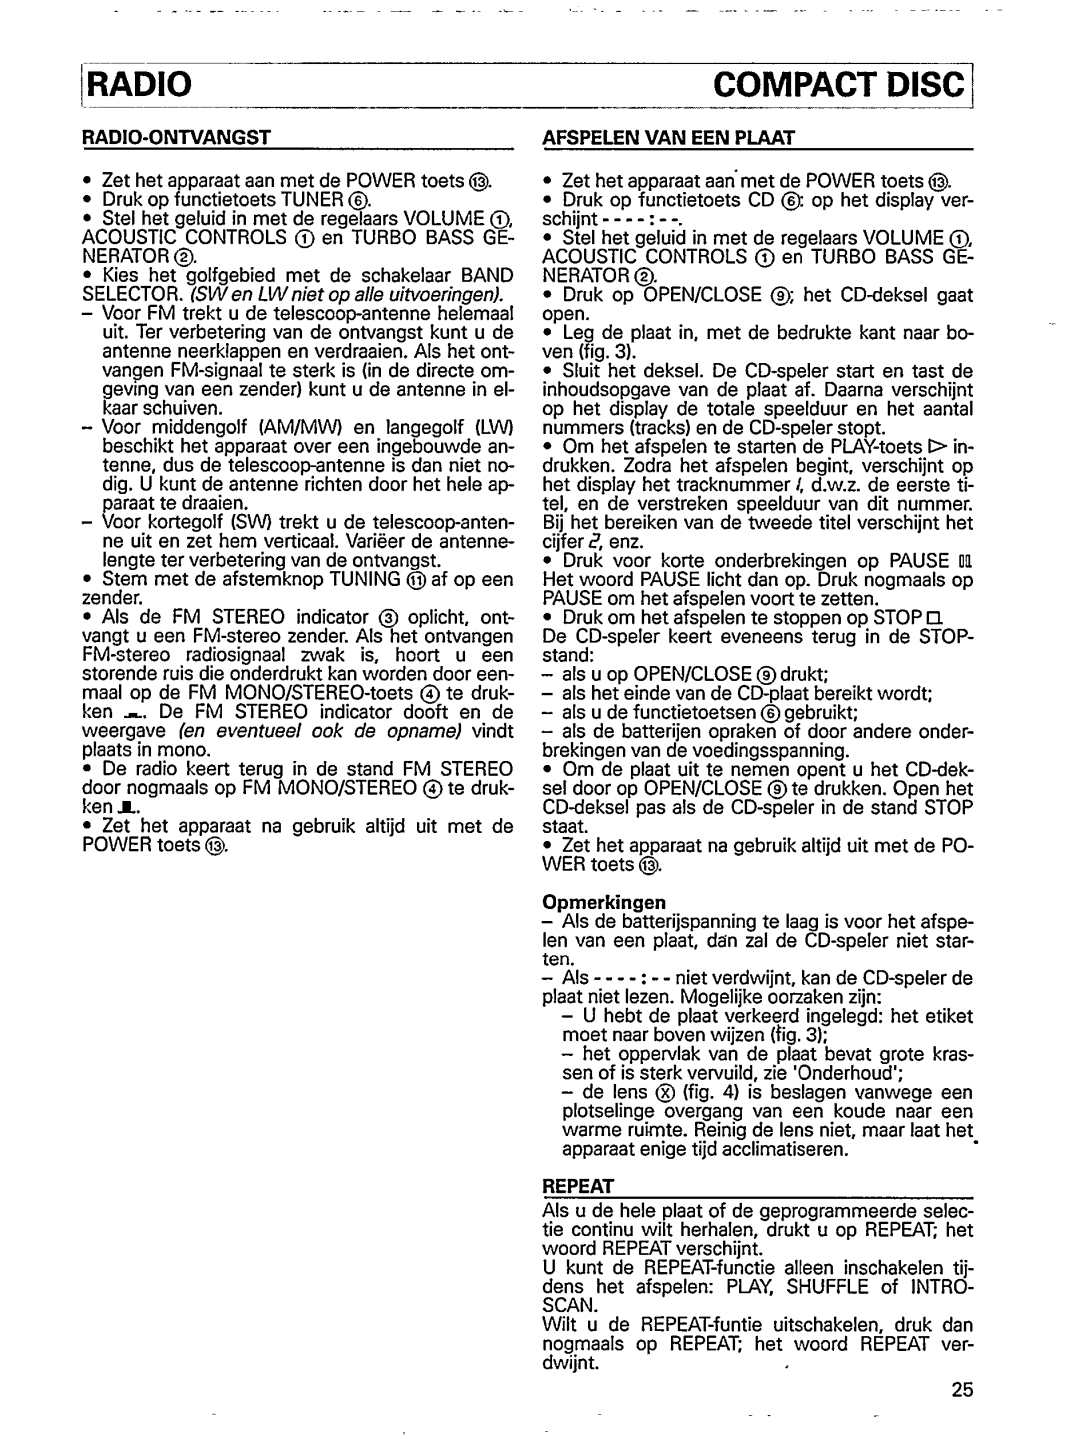 Philips AZ 8304, AZ 8300, AZ 8301 manual 